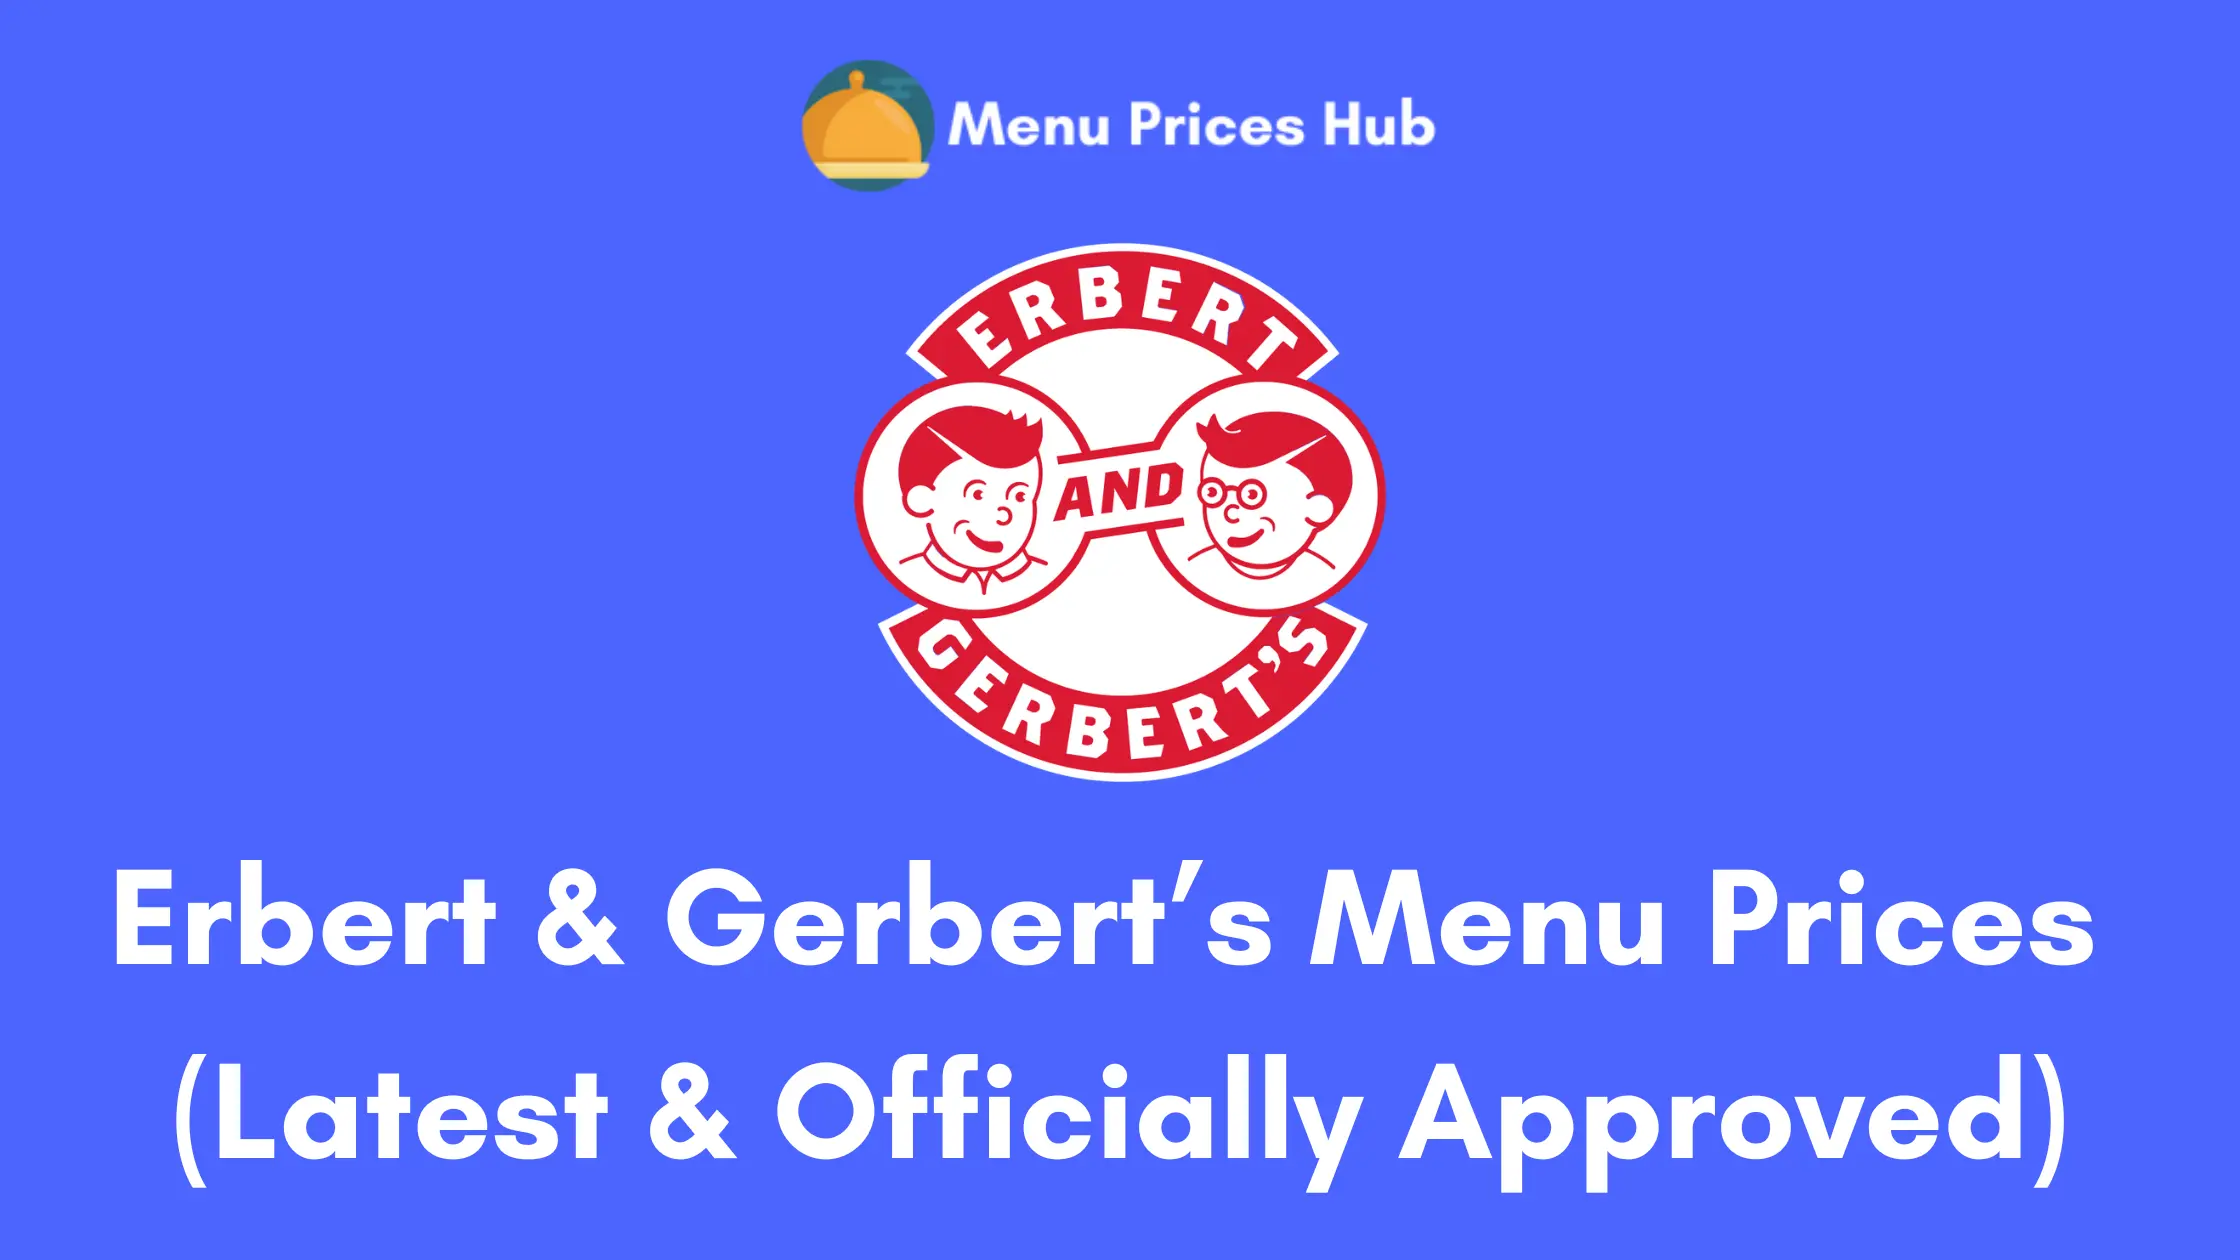 erbert & gerbert’s menu prices